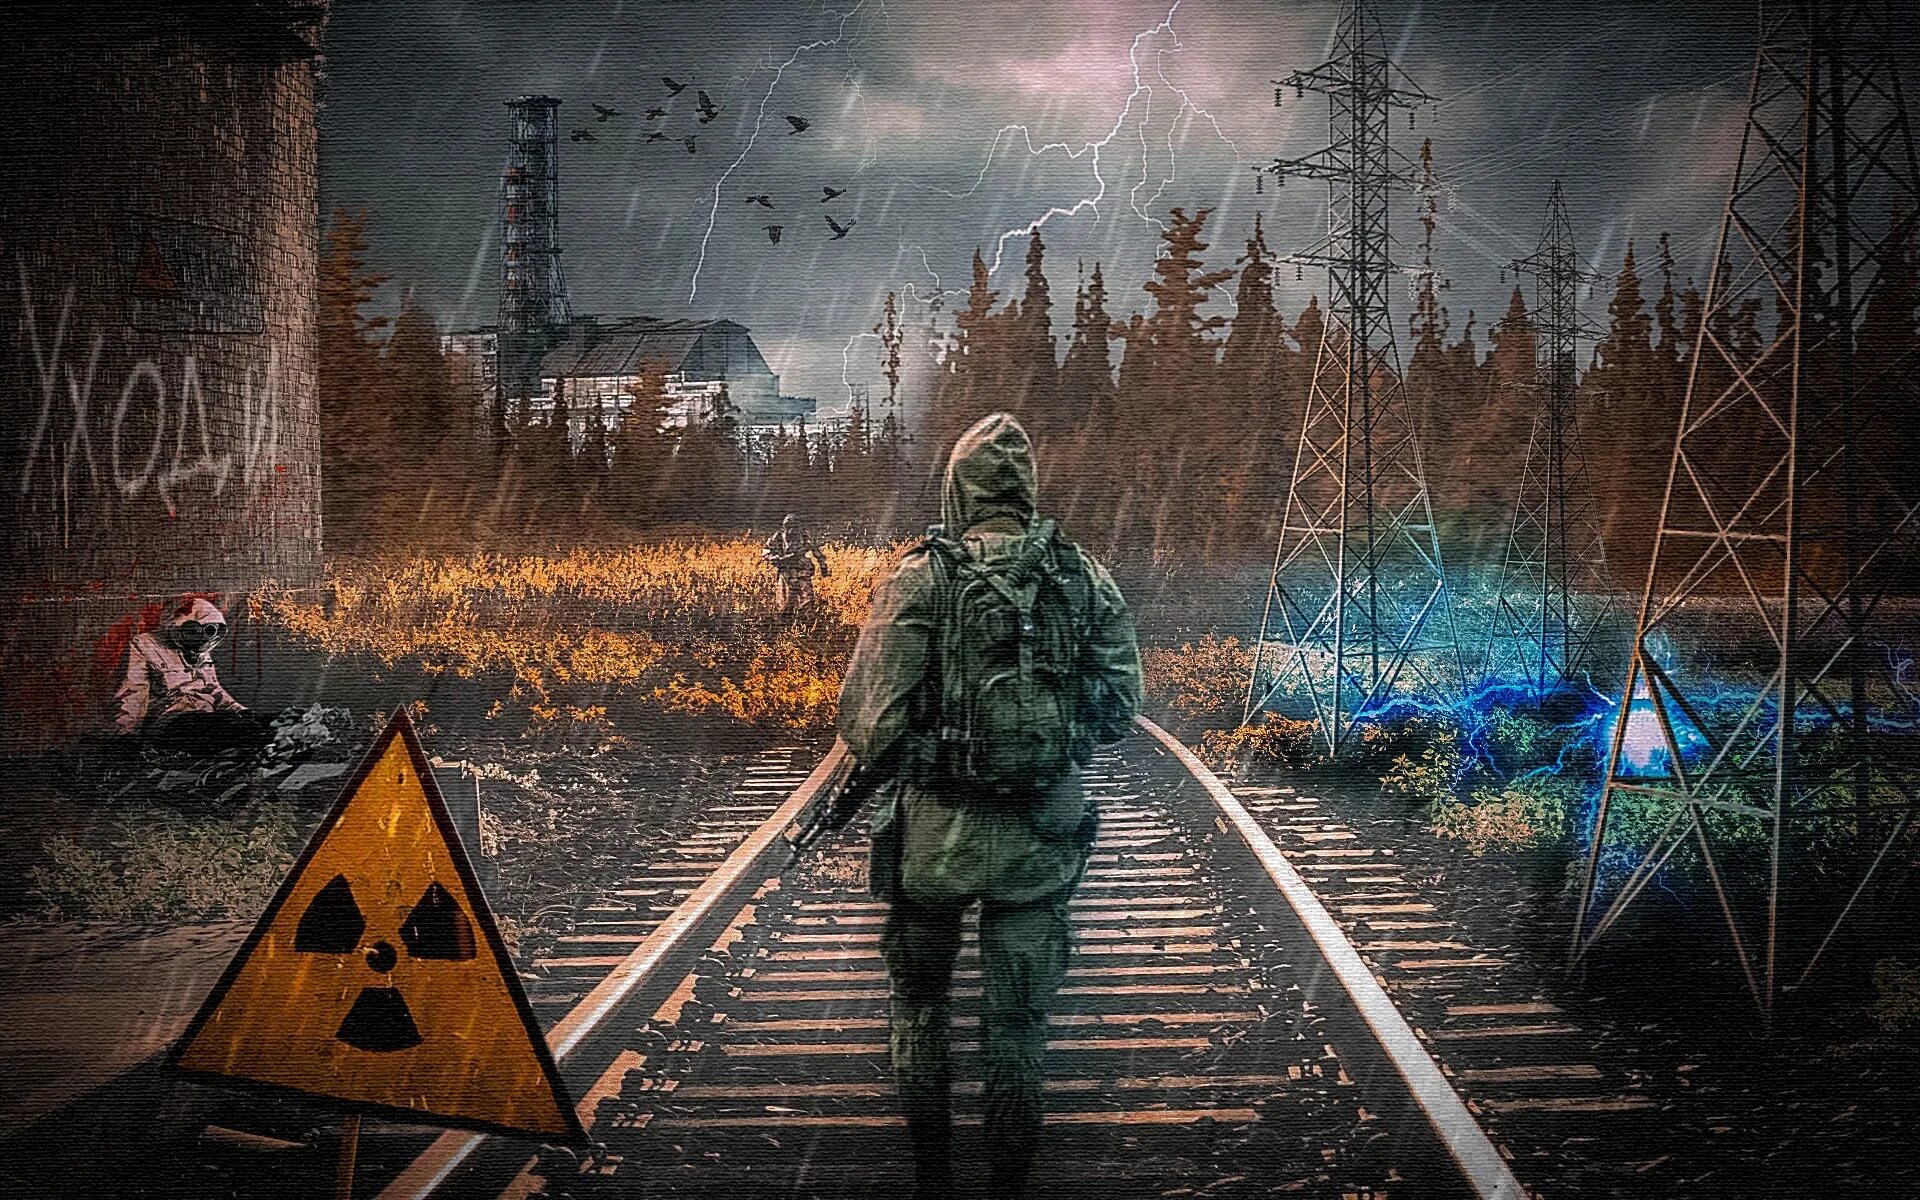 Сталкер 2 арт монолит. Зона Чернобыль s.t.a.l.k.e.r. Сталкер арт с Чернобылем 2. Сталкер сюжетка